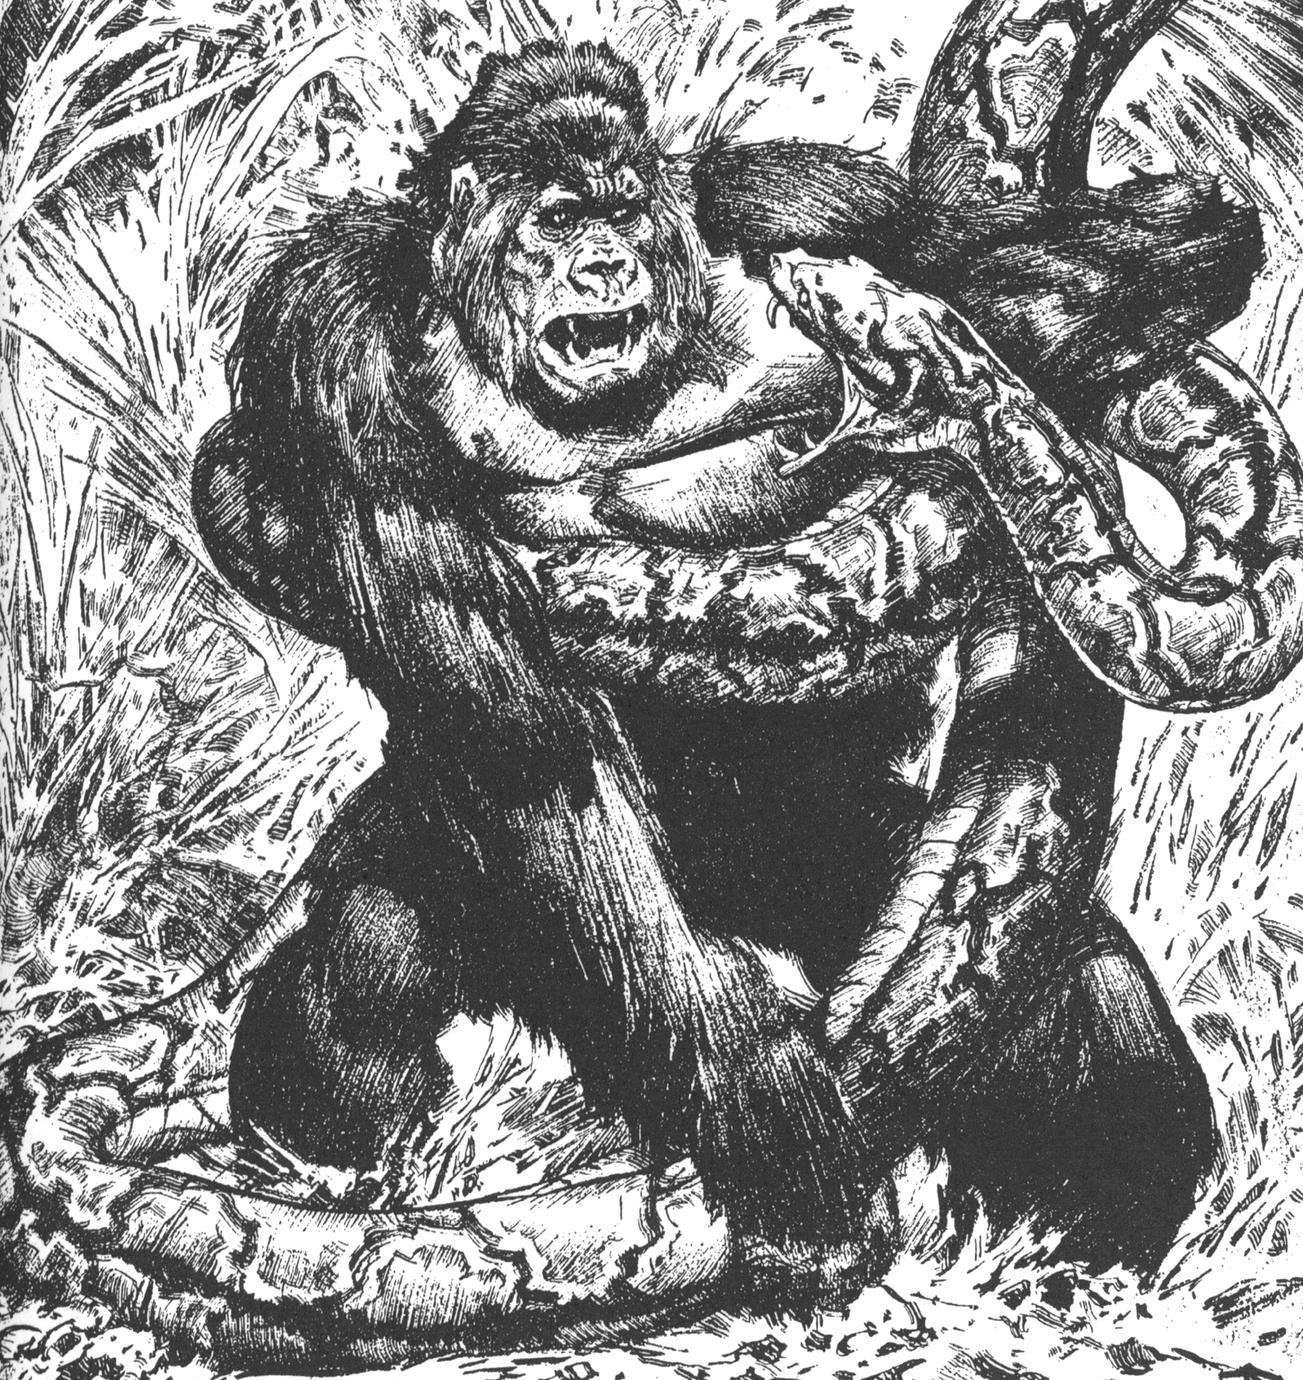 gorilla vs snake fight